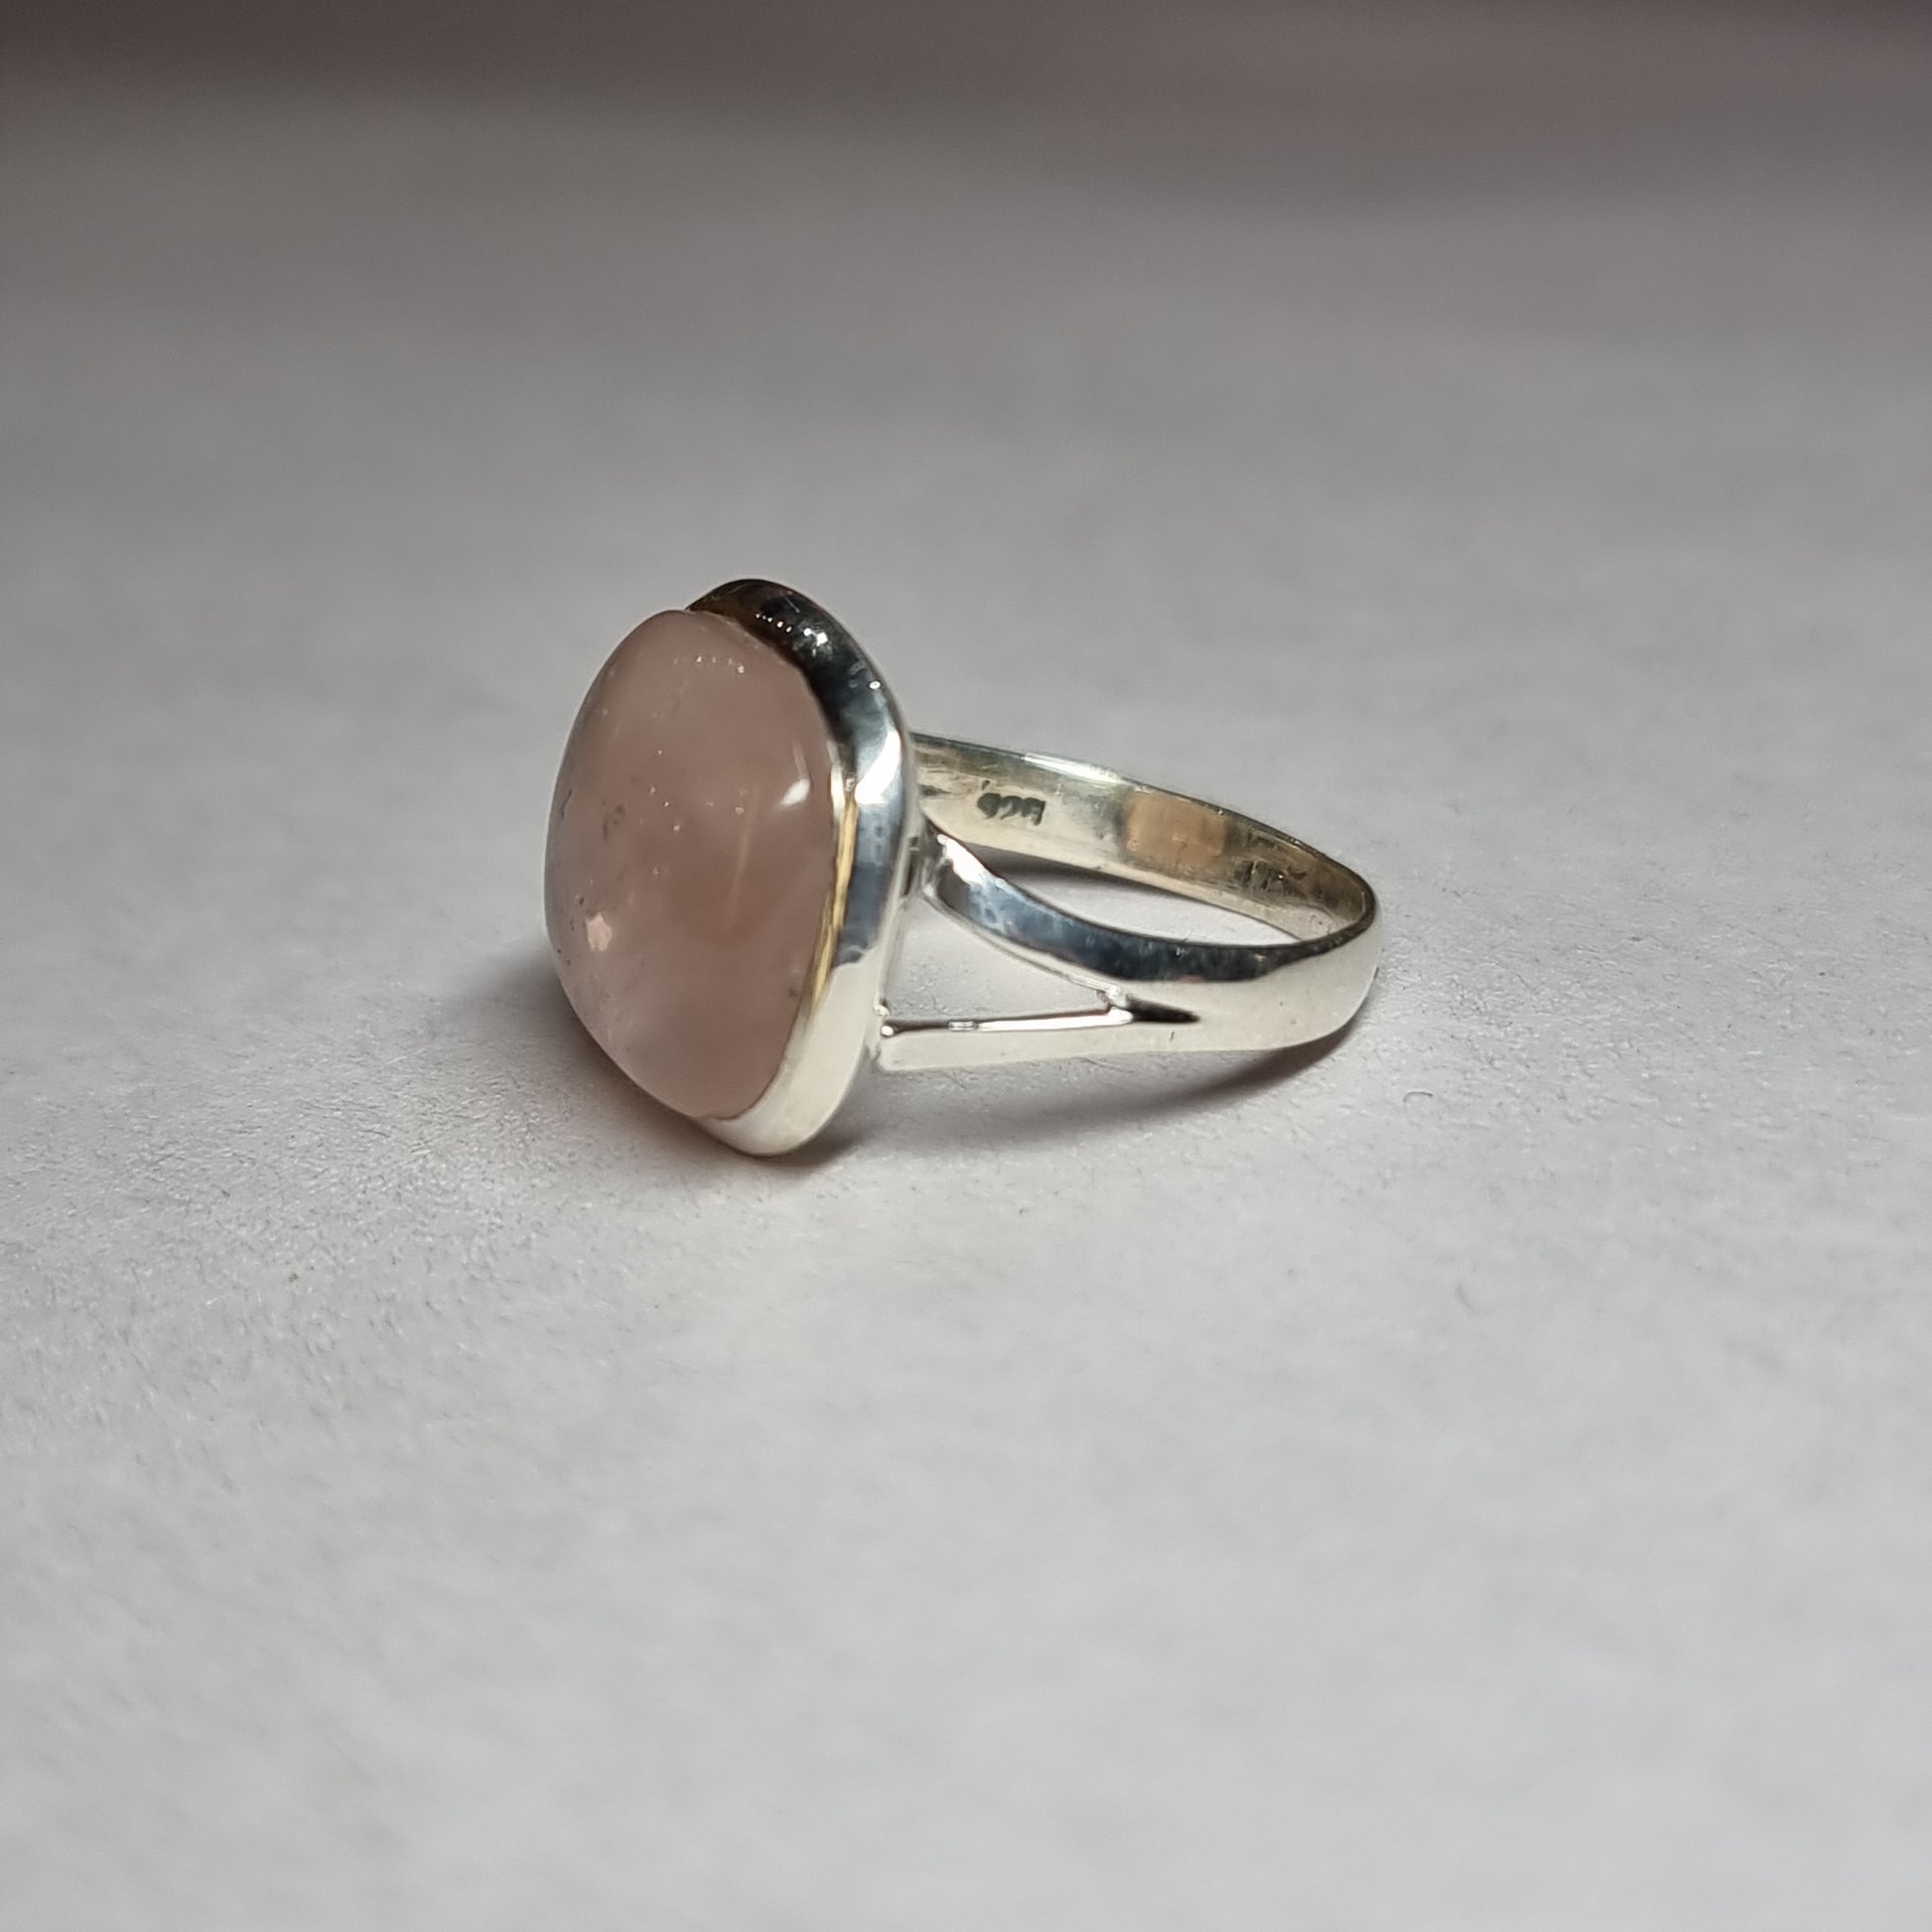 Rose quartz ring - Rivendell Shop